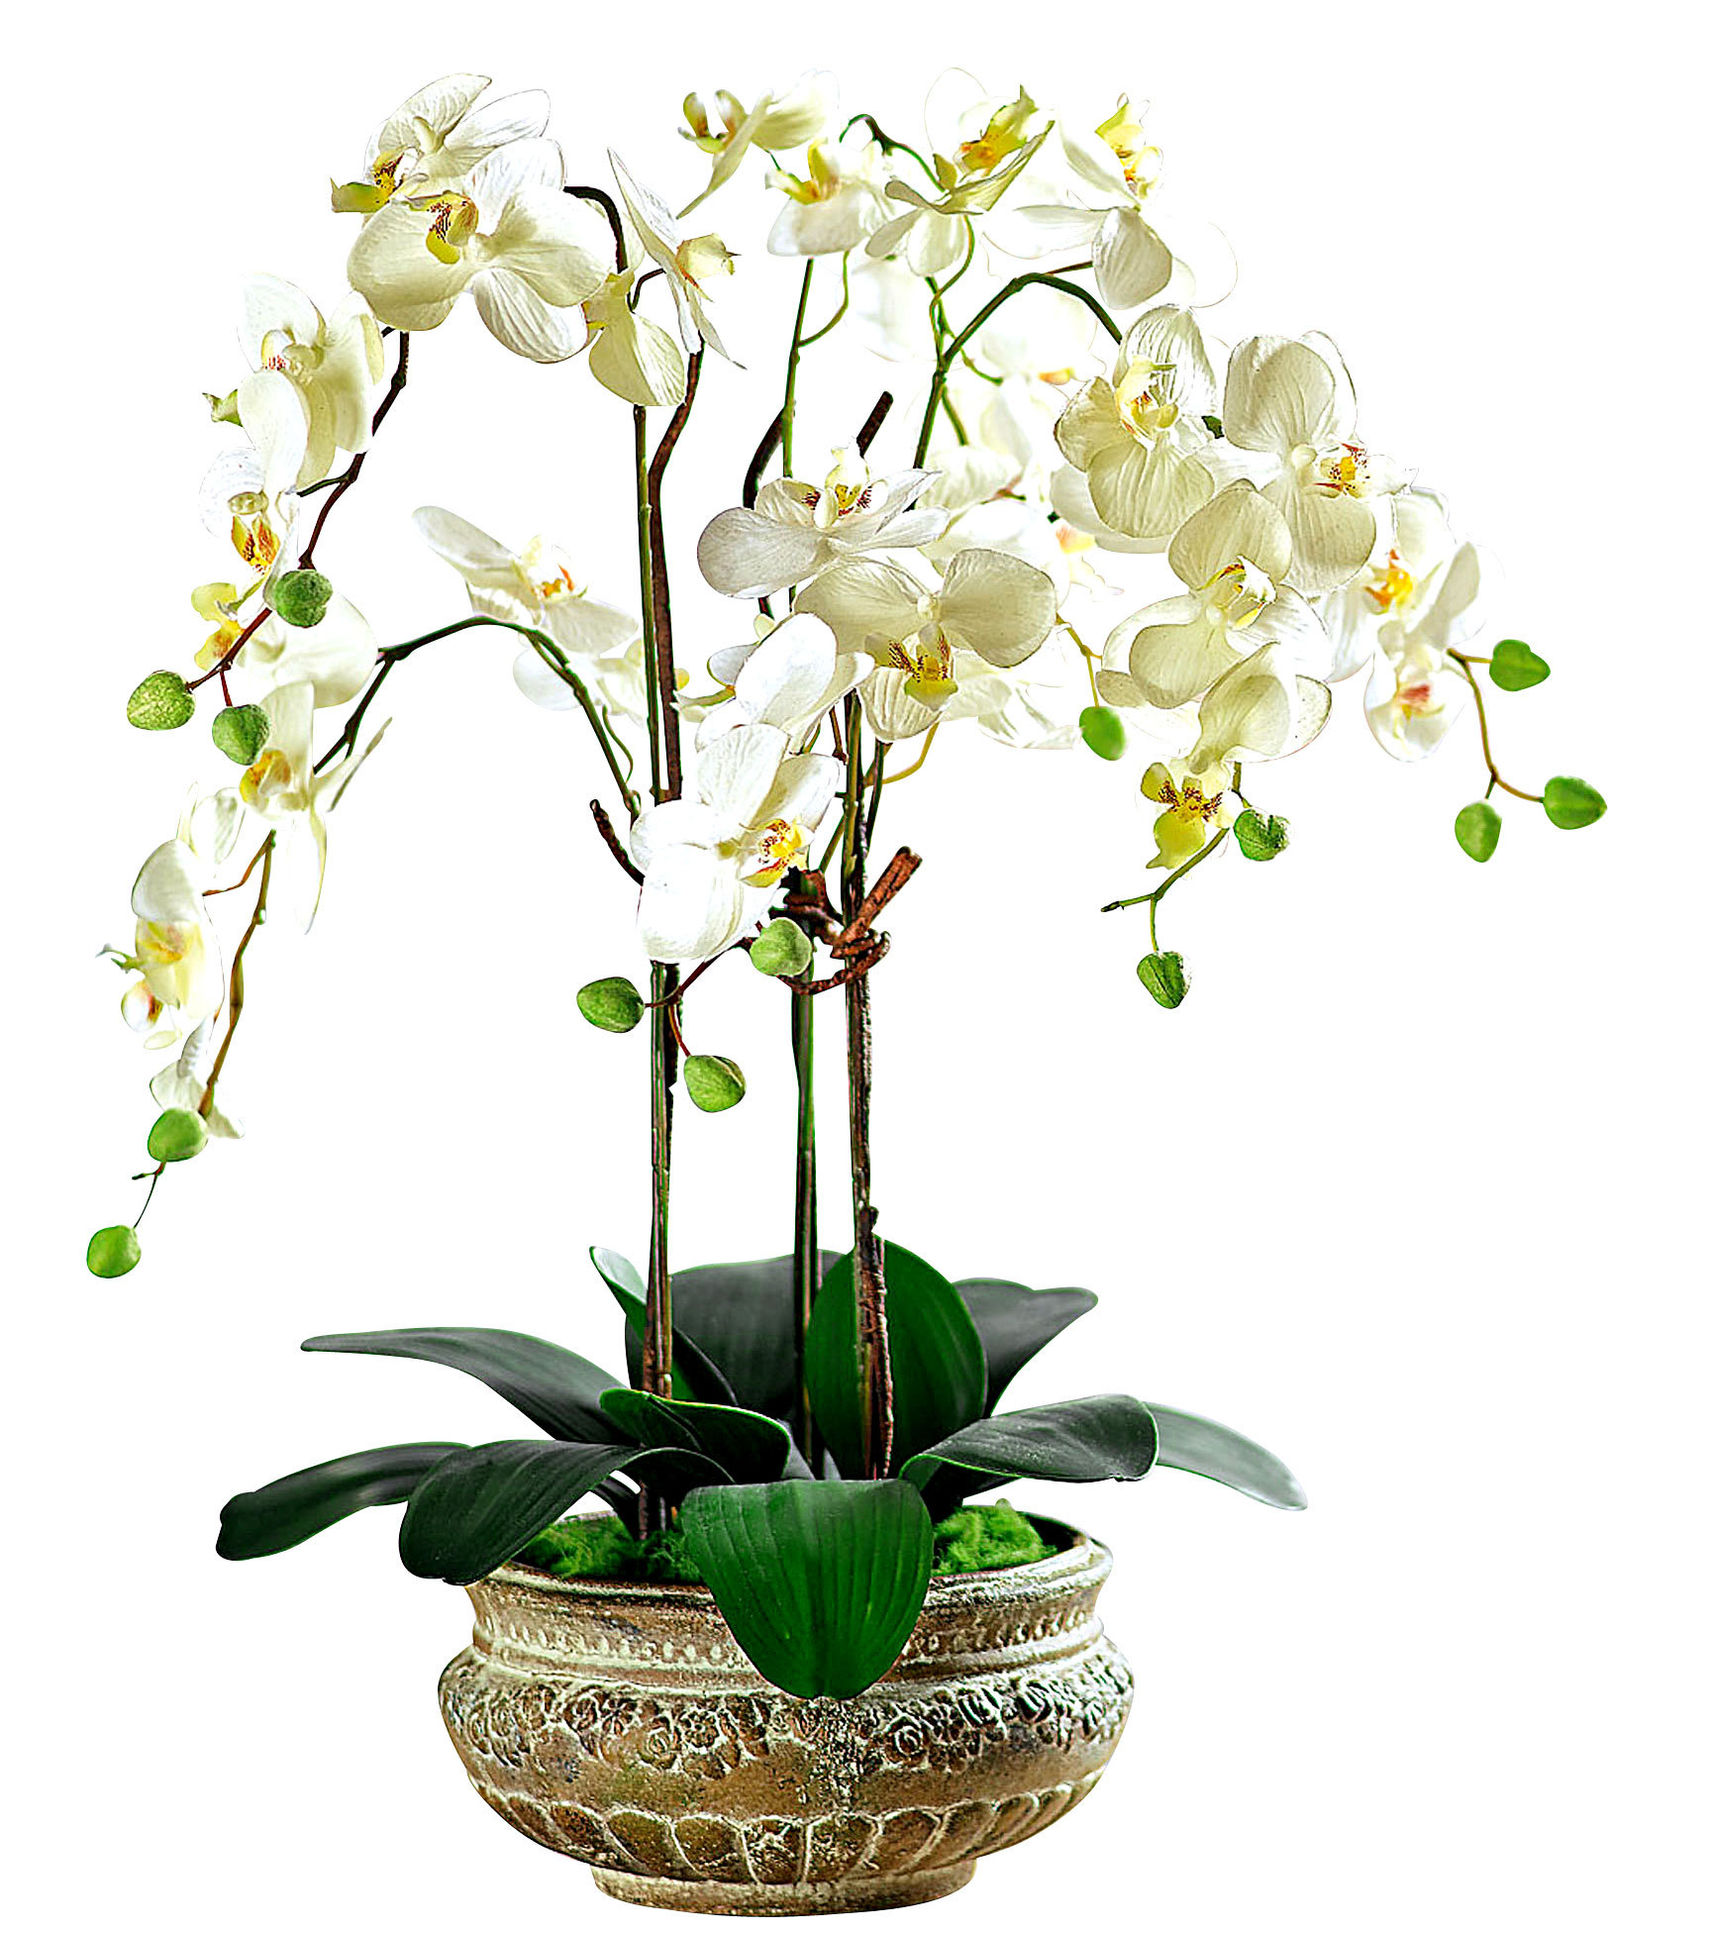 Pflanzkübel Orchidee jetzt bei Weltbild.at bestellen